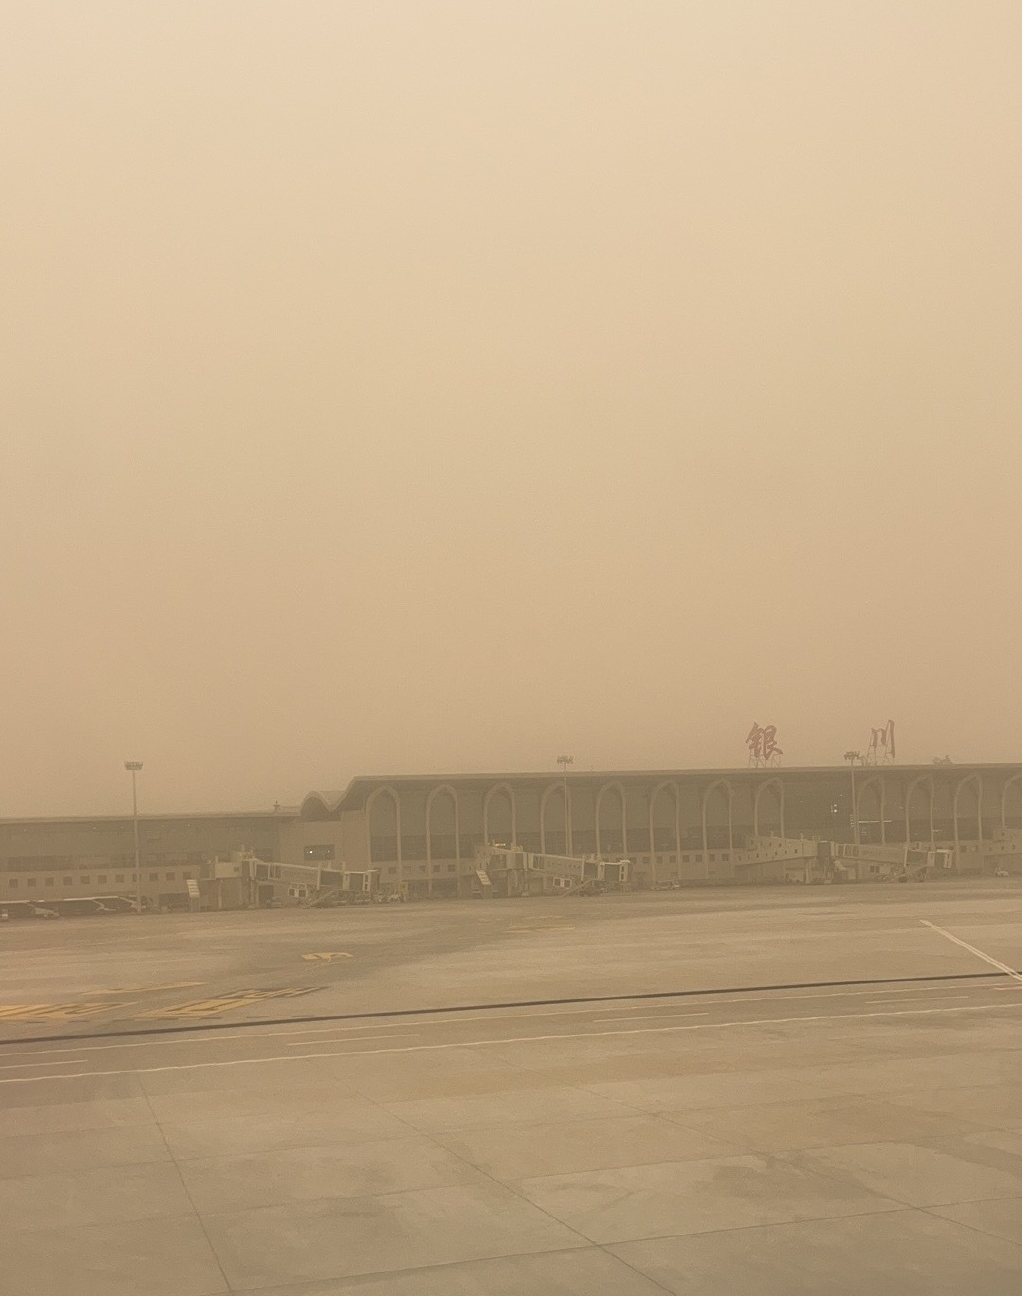 沙尘暴下的银川机场。